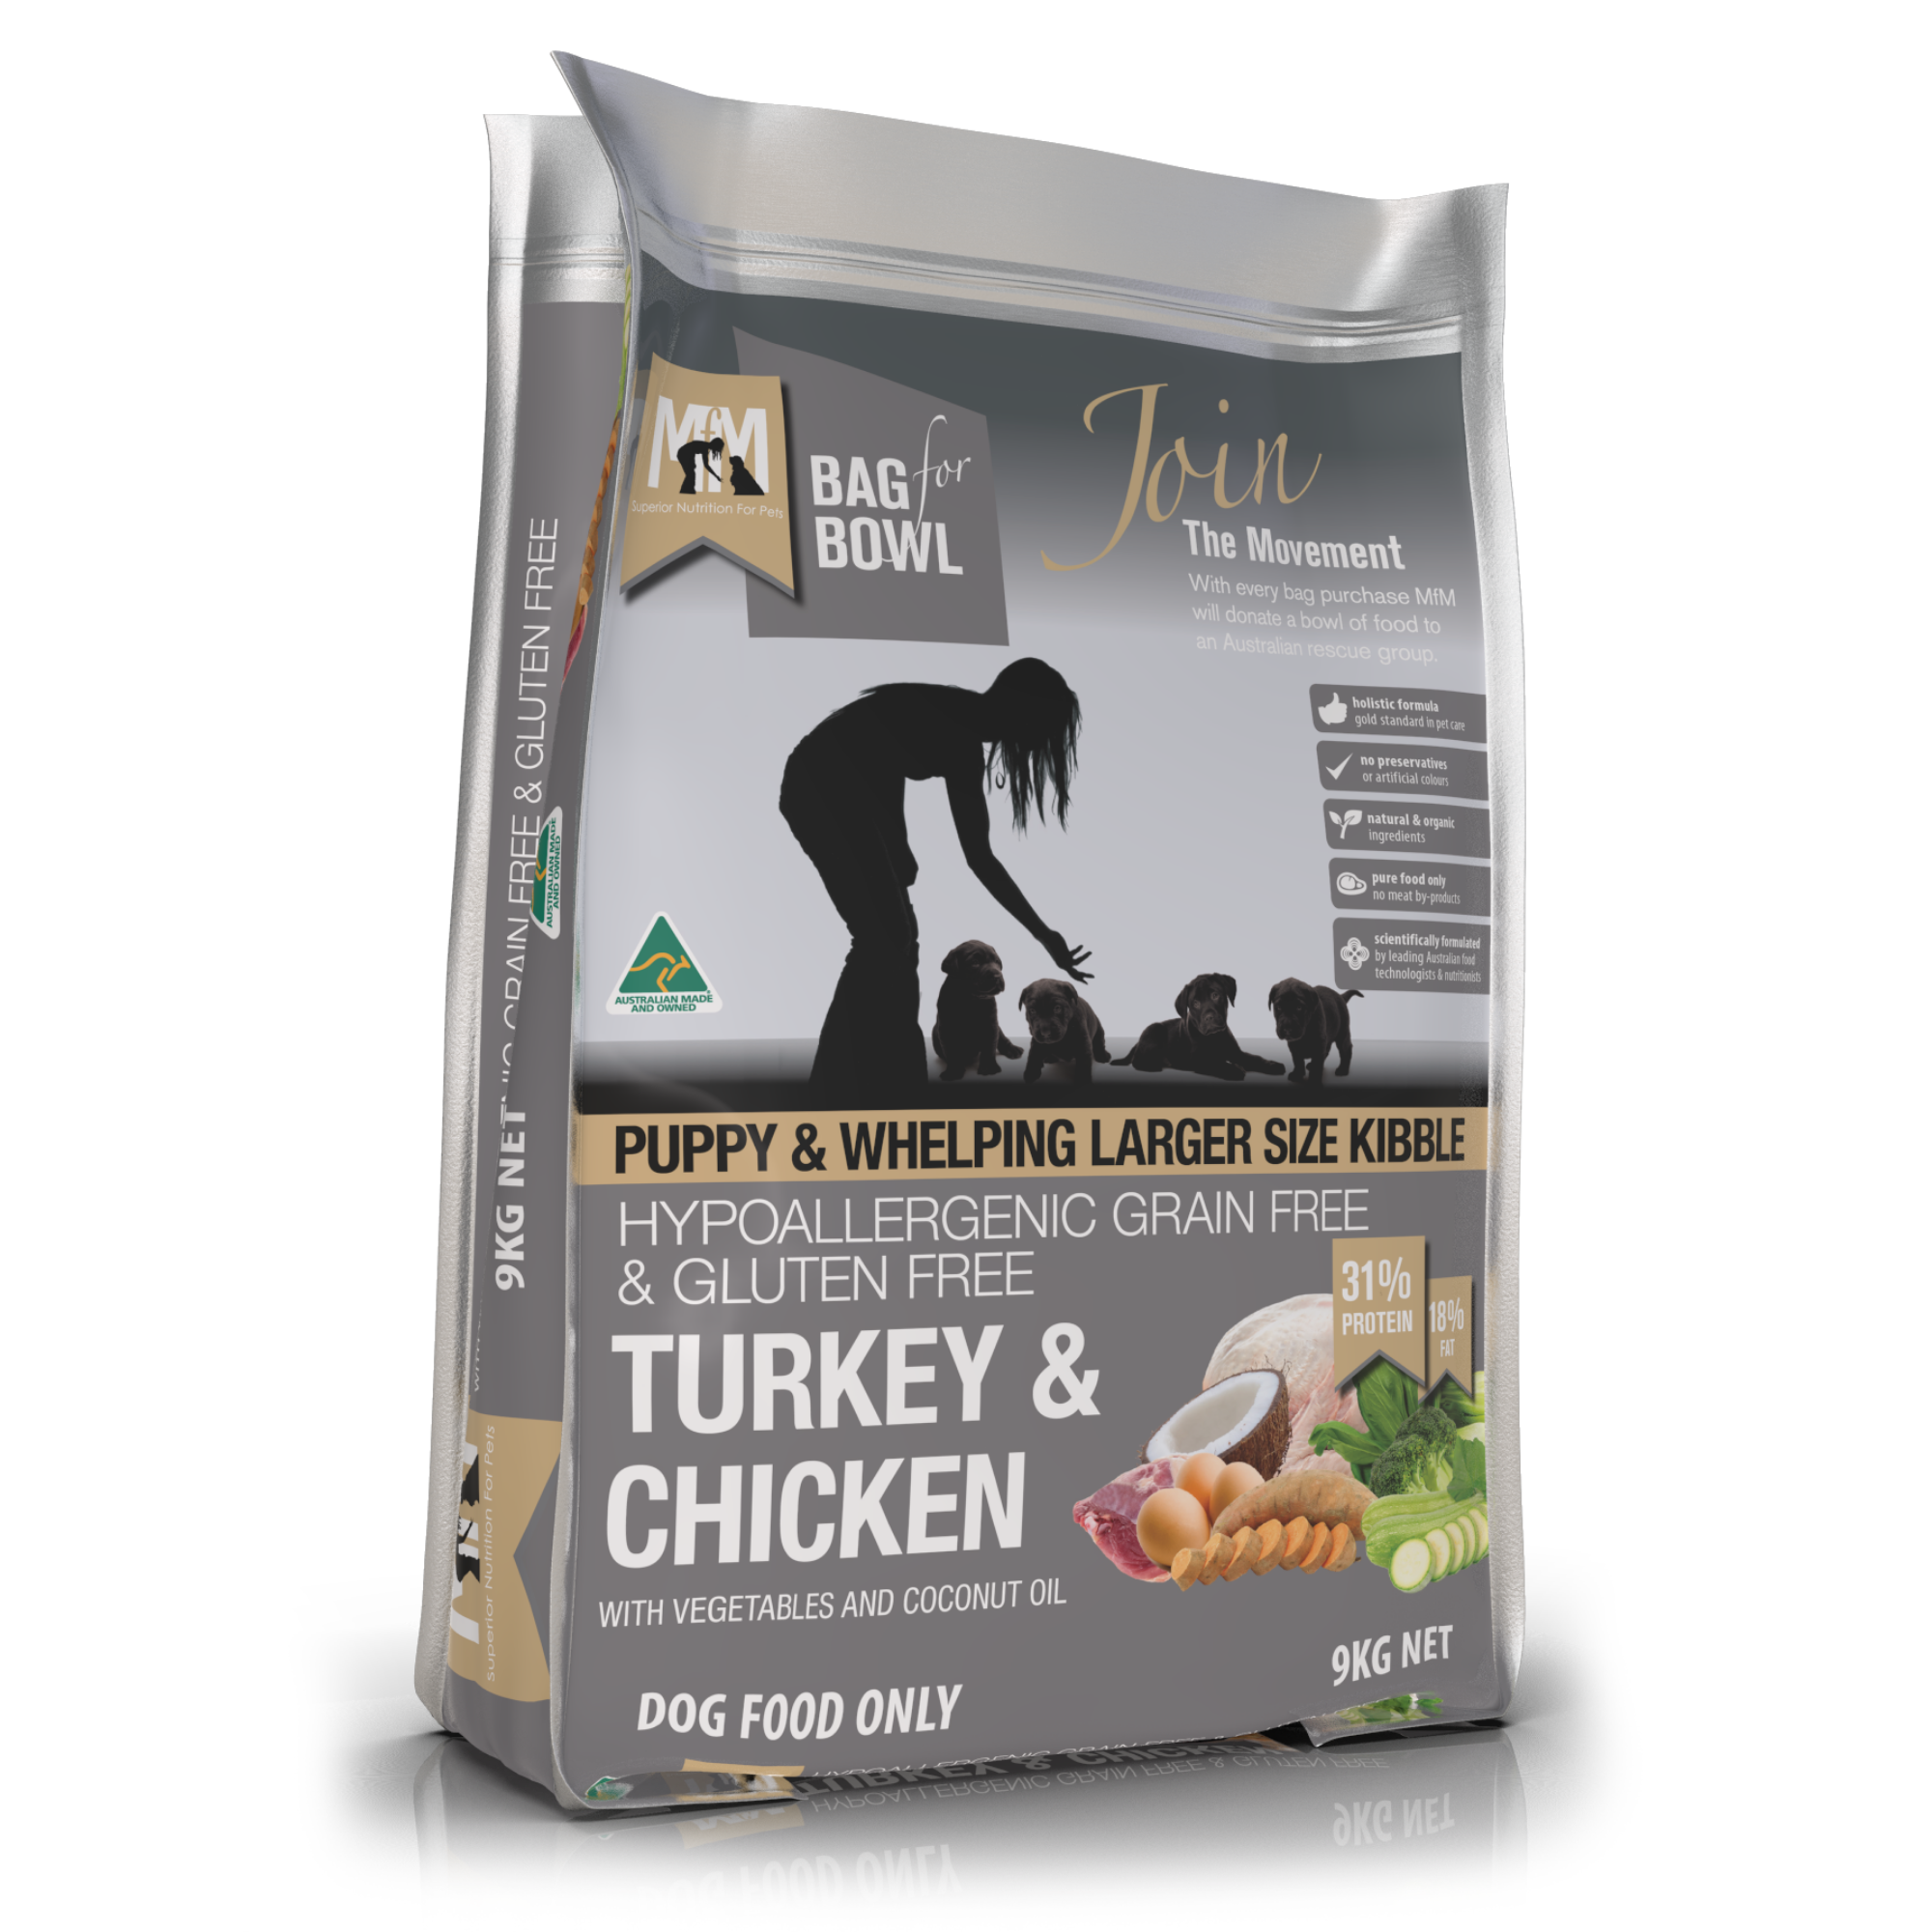 Meals For Mutts - Puppy Turkey & Chicken Grain Free